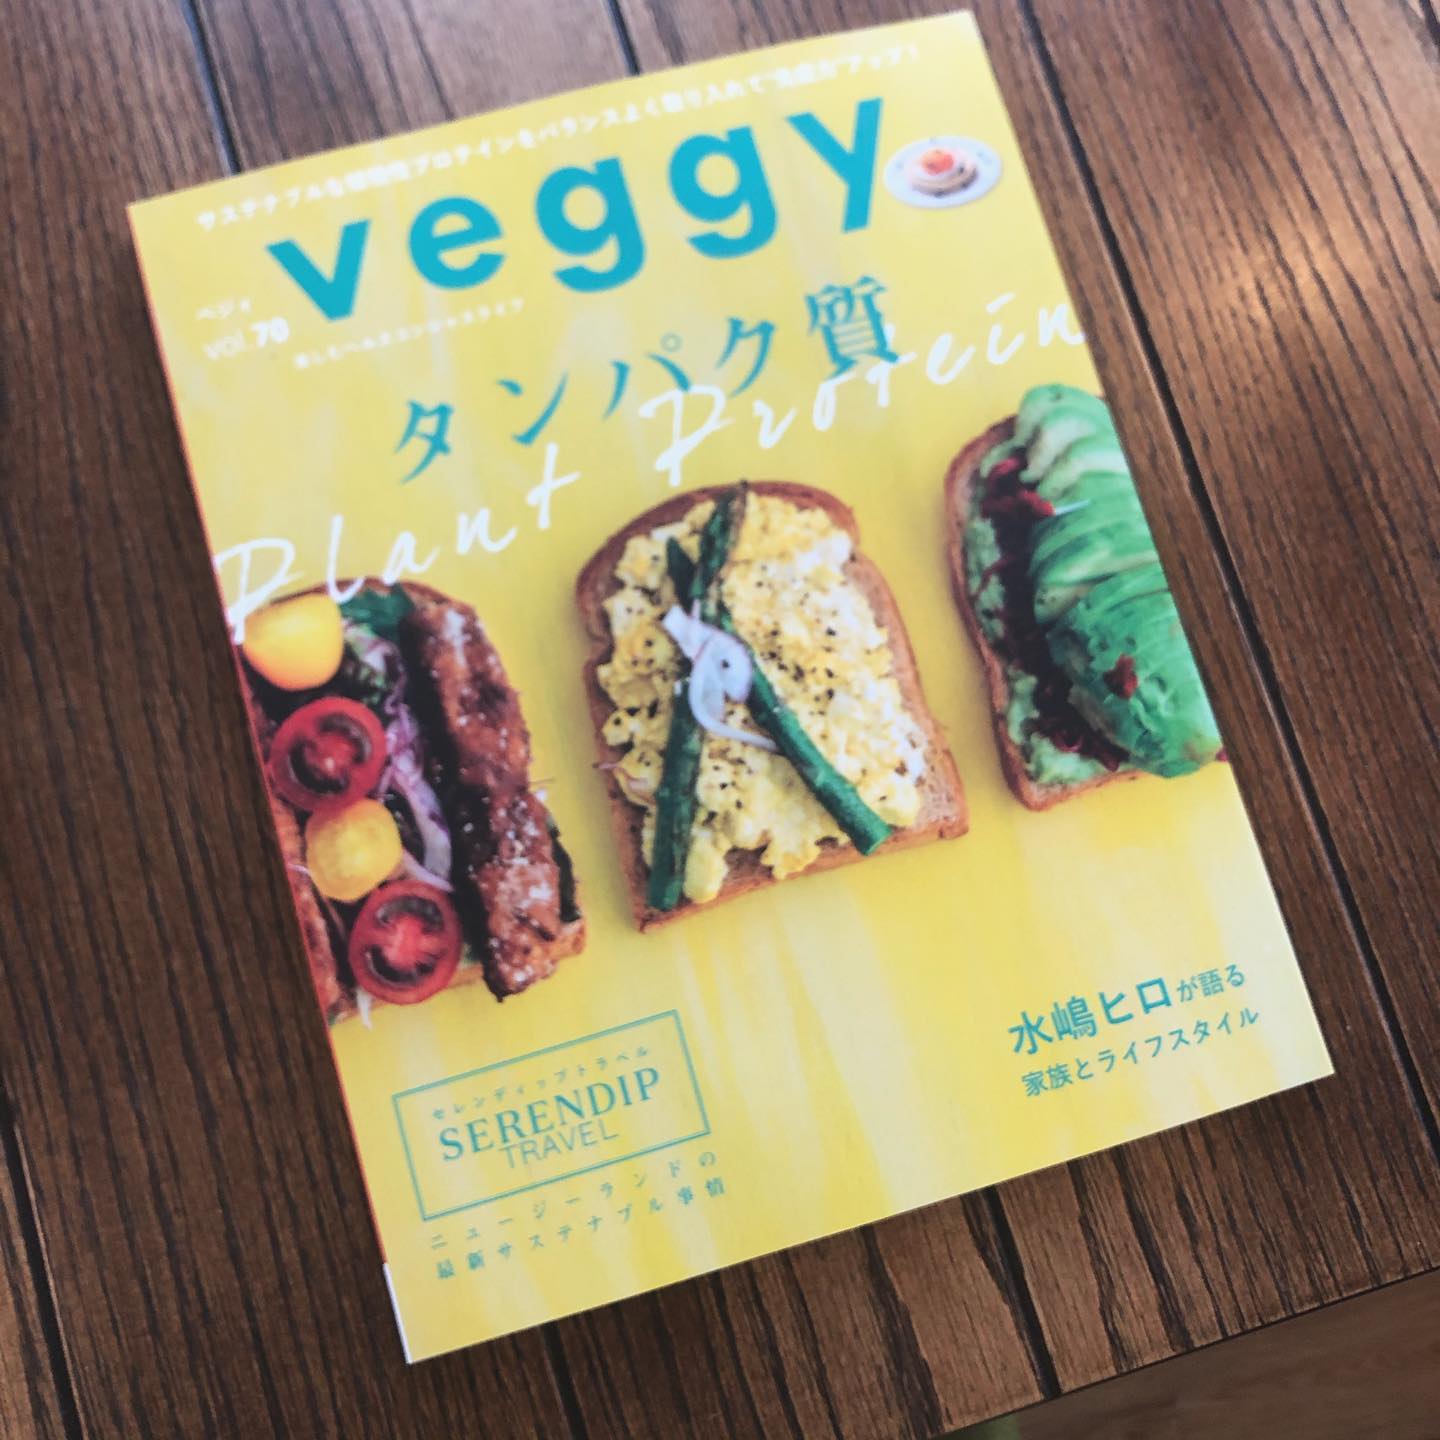 Veggyが届きました。今回のテーマは「タンパク質」わーわー、とっても興味津々で早速読んでます。お店に定期購読で置いてありますので、ぜひお手に取ってください。#veggy #定期購読 #上尾カフェ #葉の園の本棚 